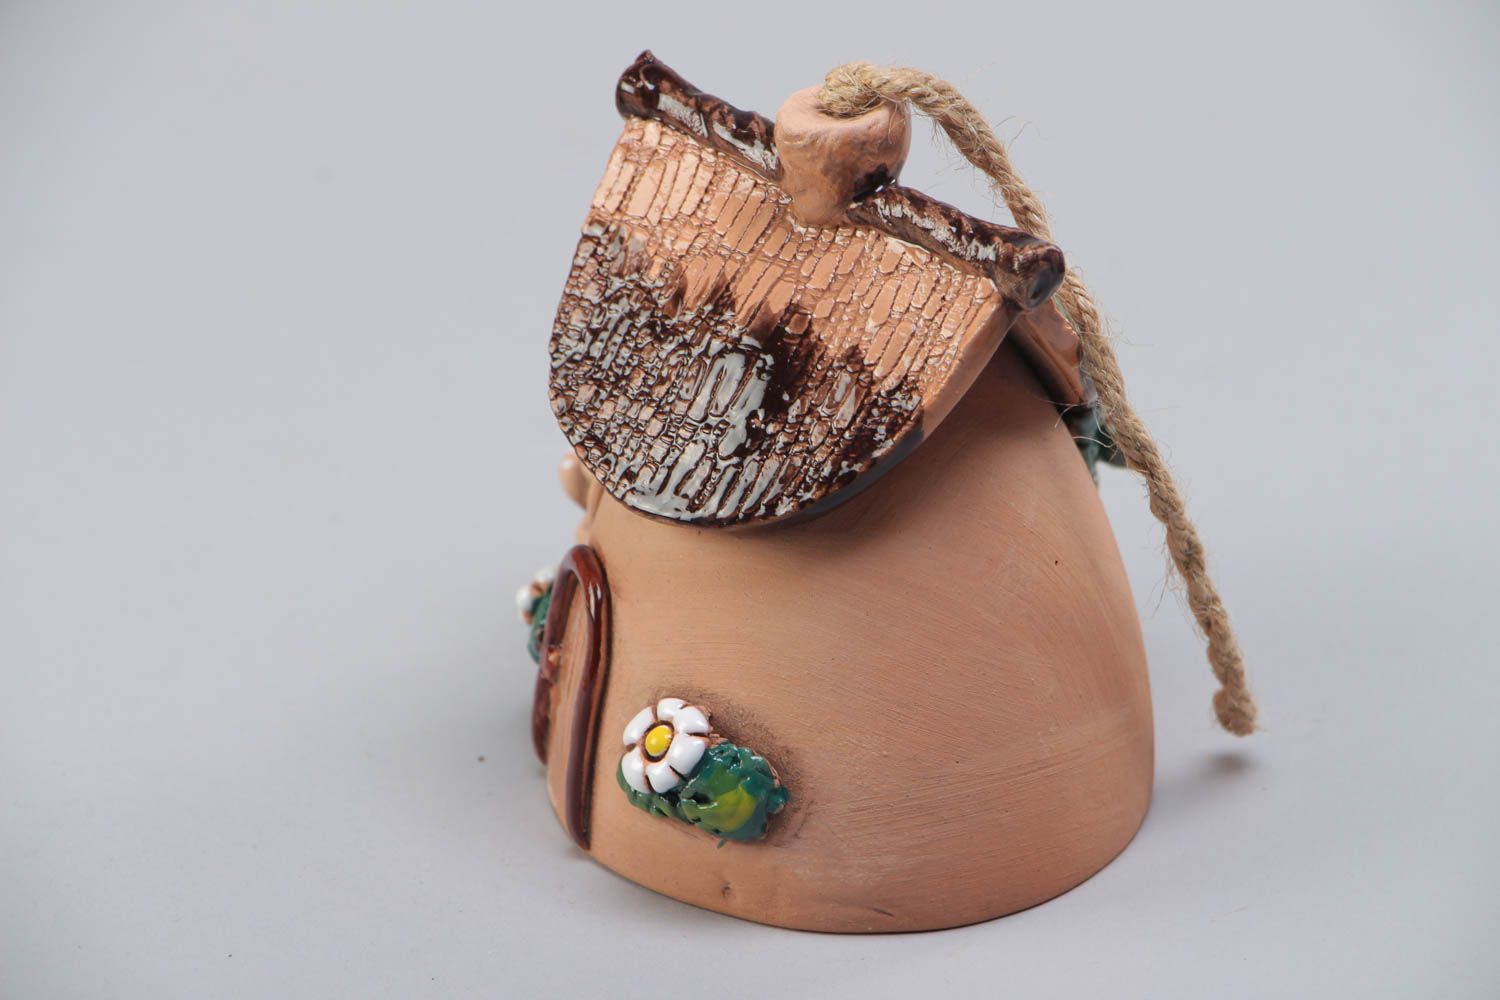 Расписанный акриловыми красками глиняный колокольчик в виде домика хэнд мэйд фото 3